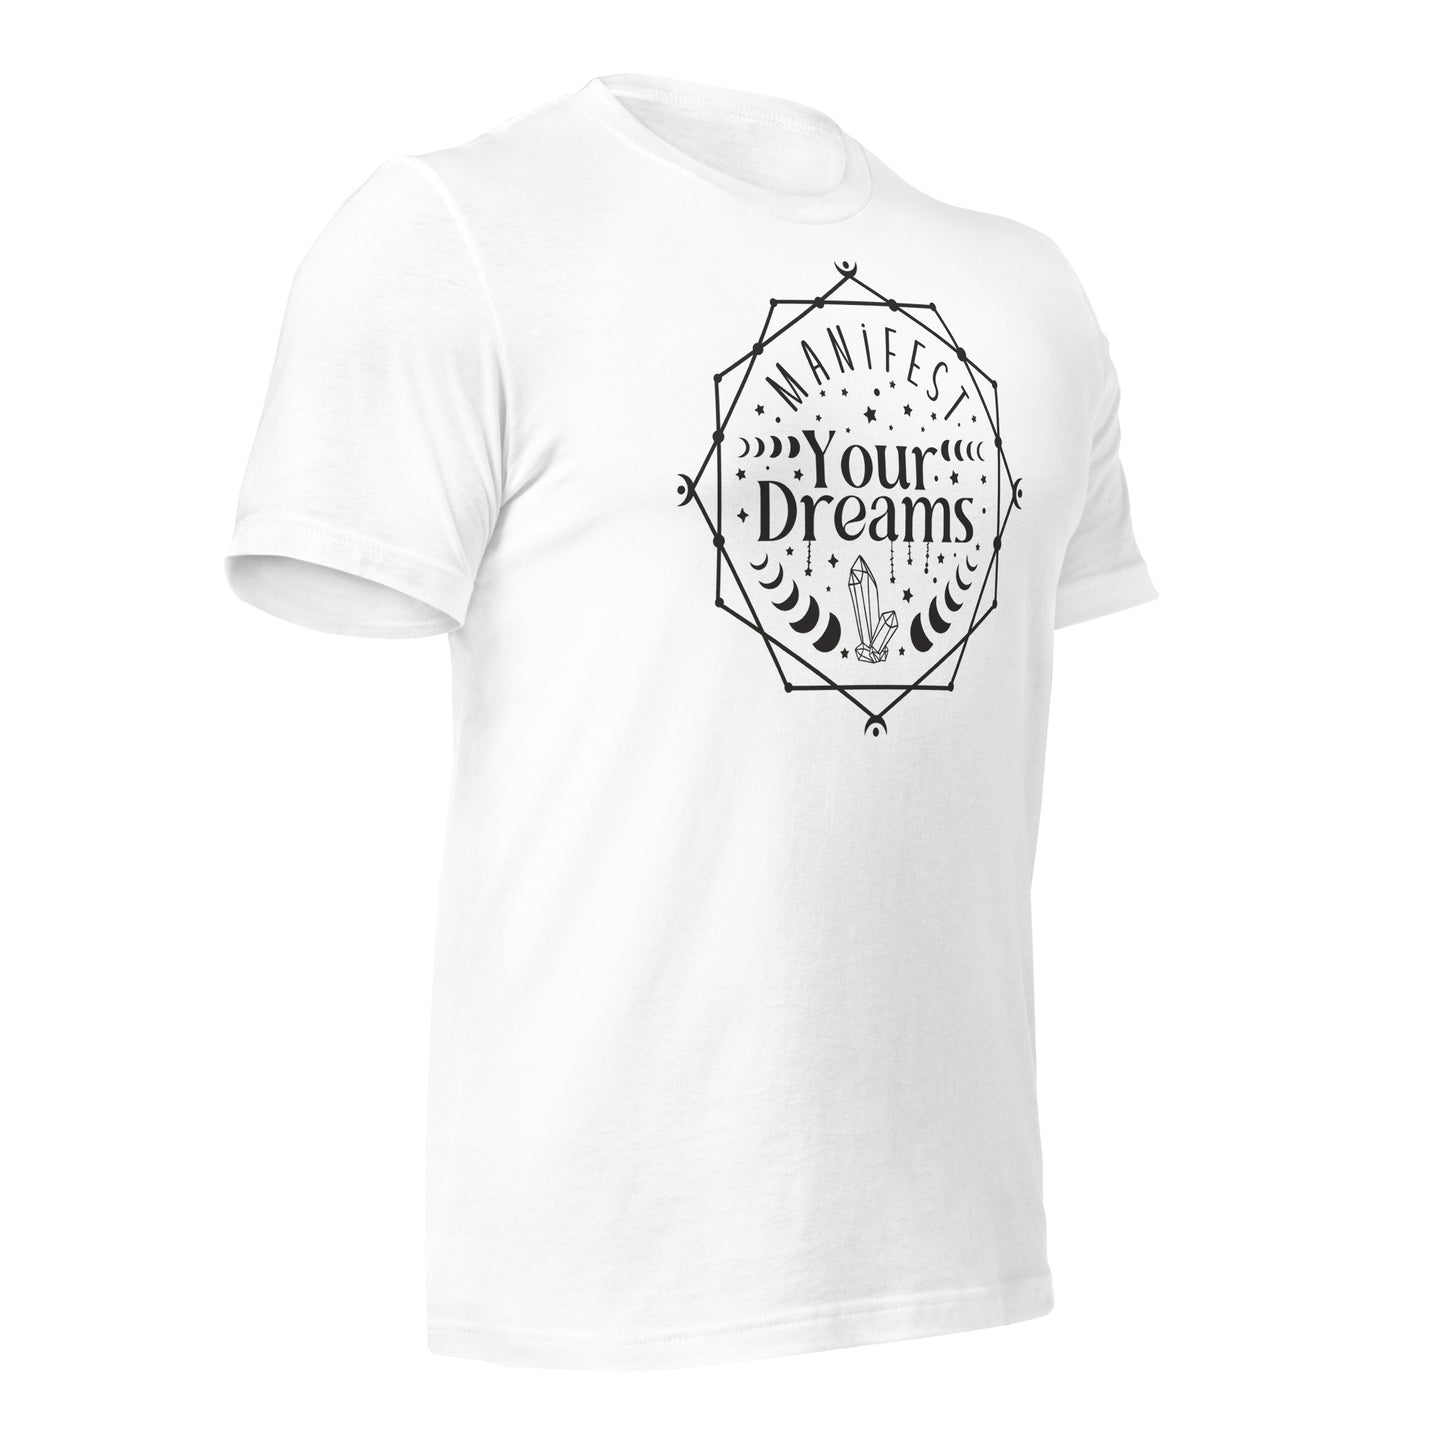 Manifest Your Dreams Quality Cotton Bella Canvas Adult T-Shirt